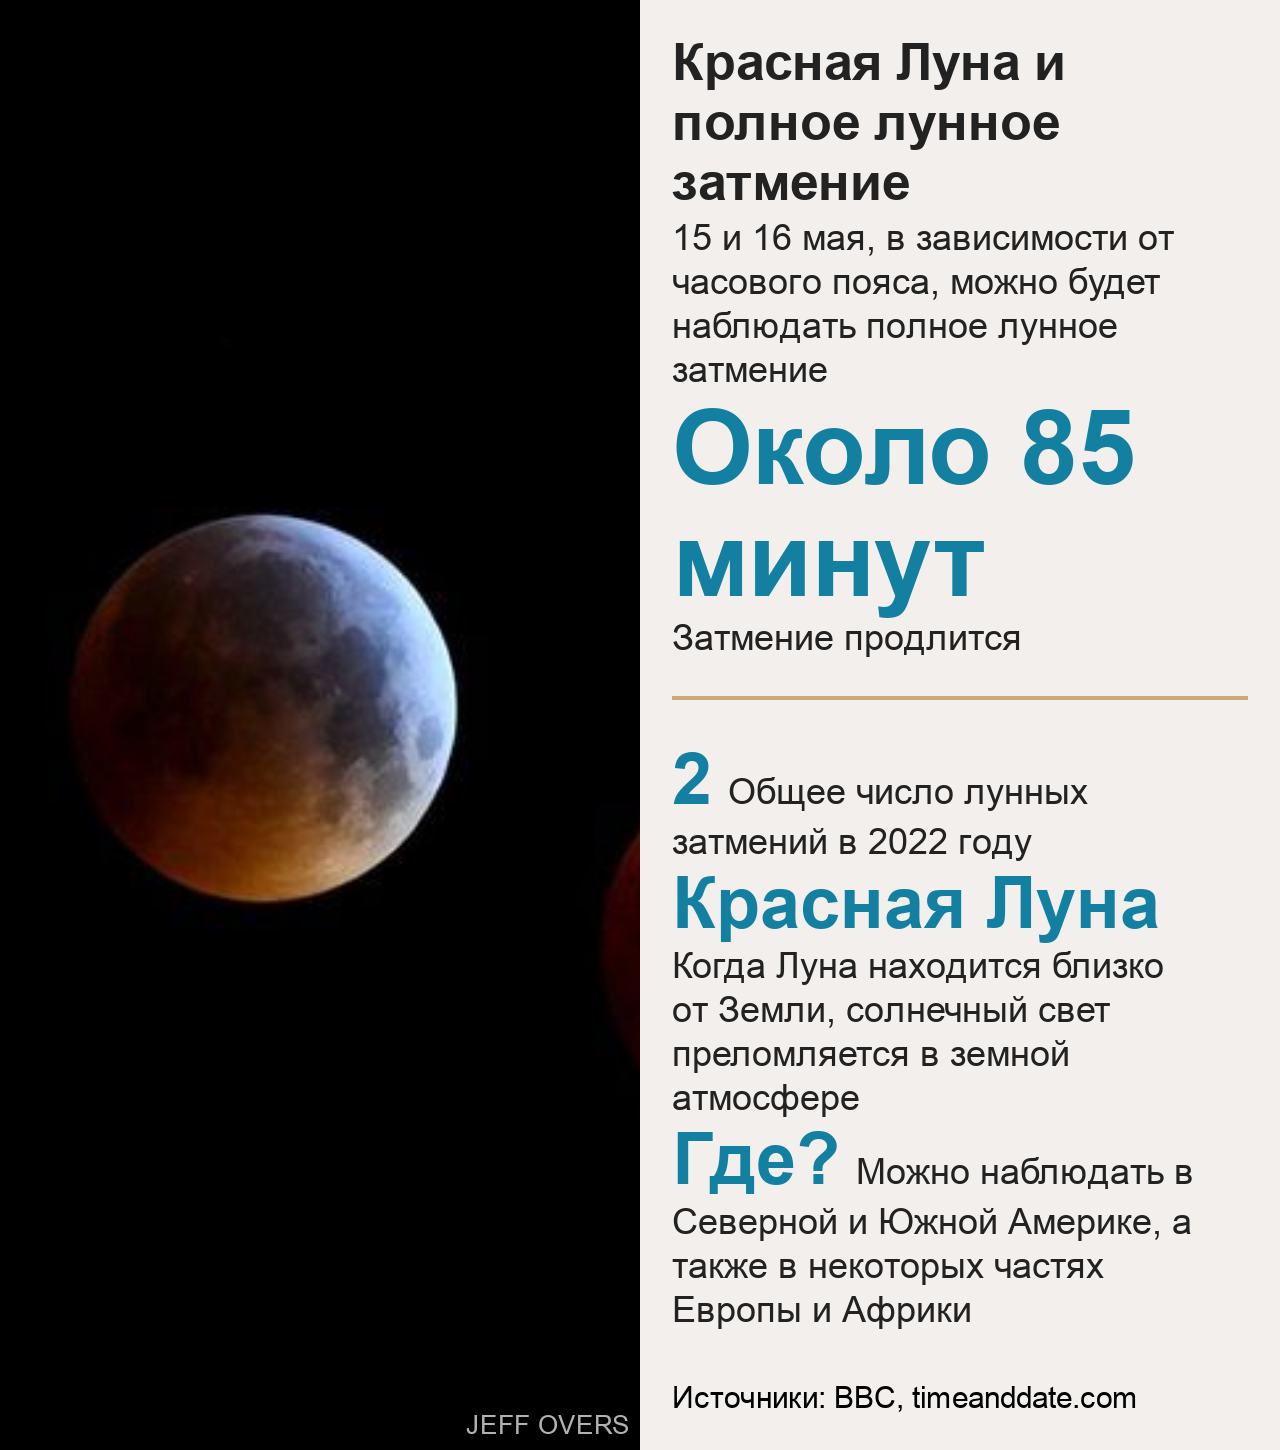 Фотография красной Луны и статистика